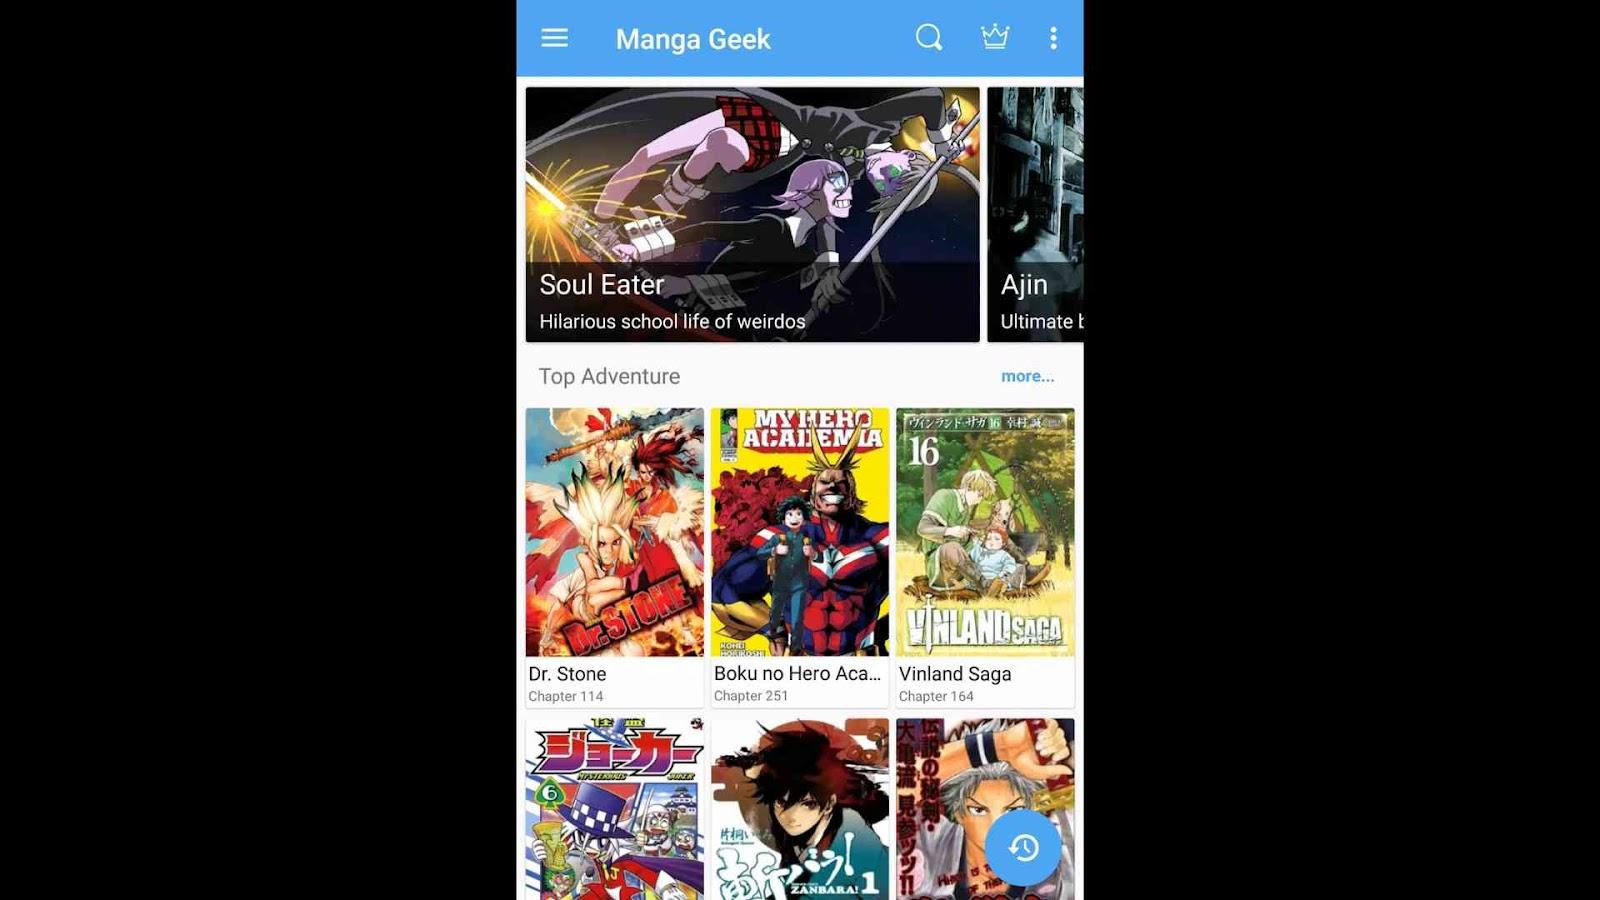 Manga Geek